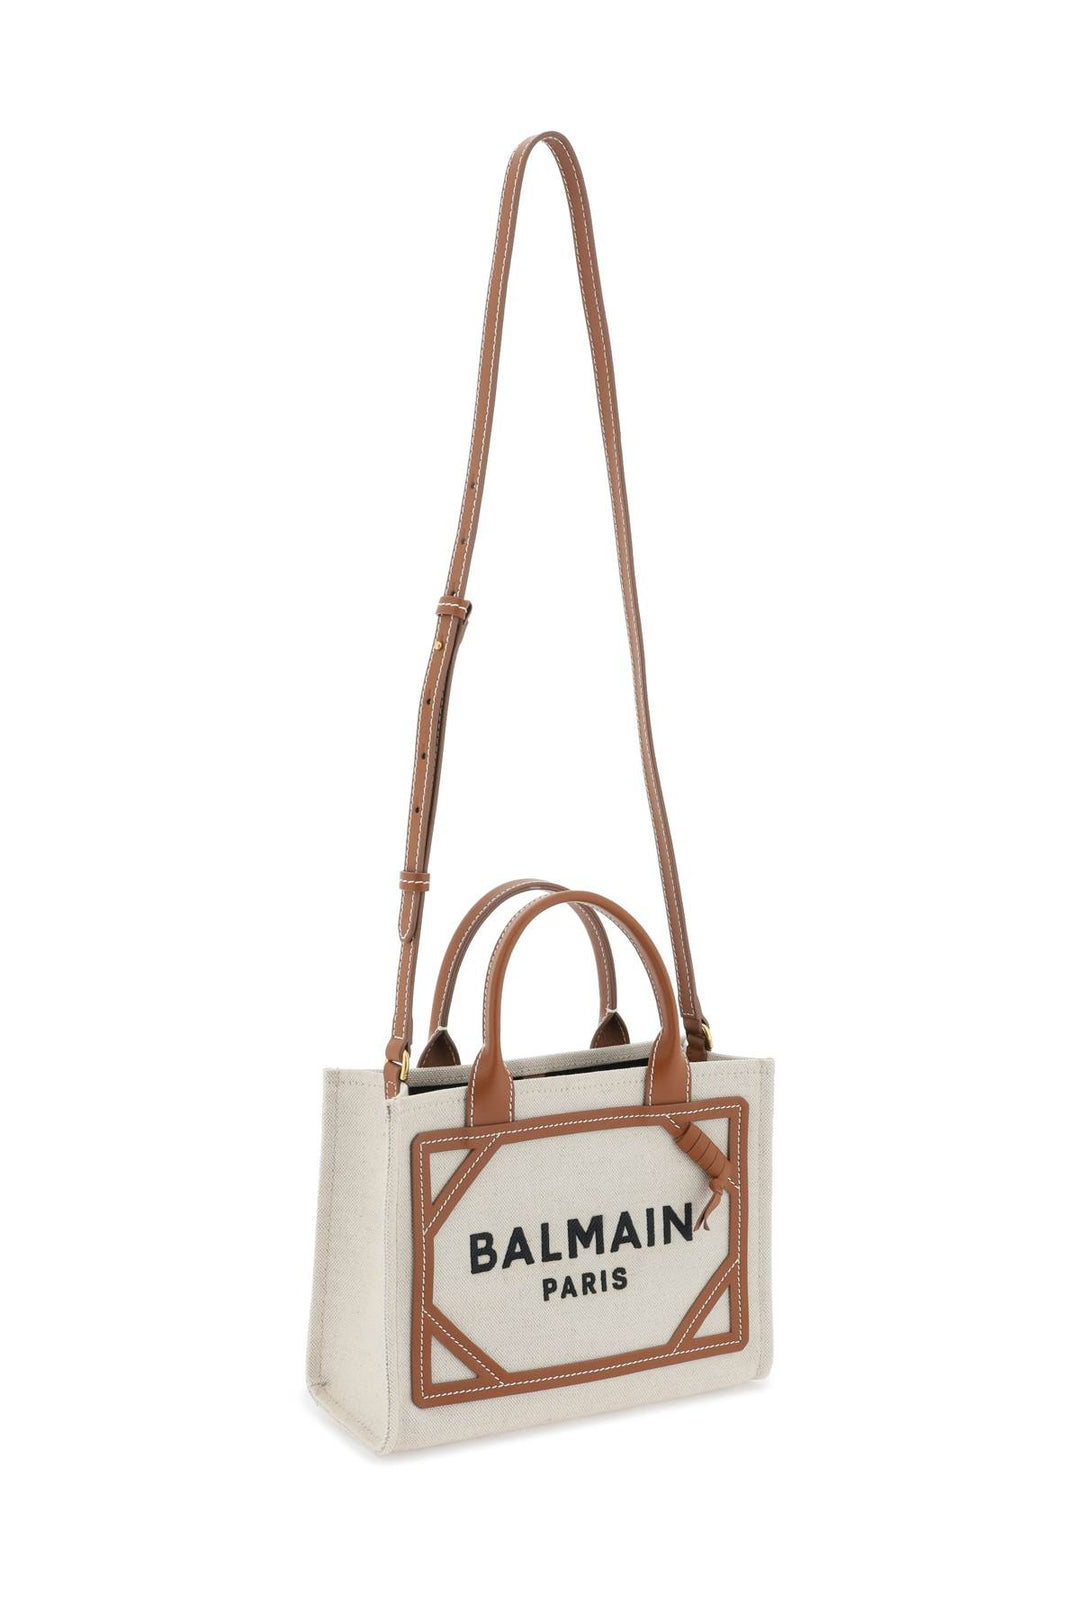 Balmain B Army Tote Bag   Brown